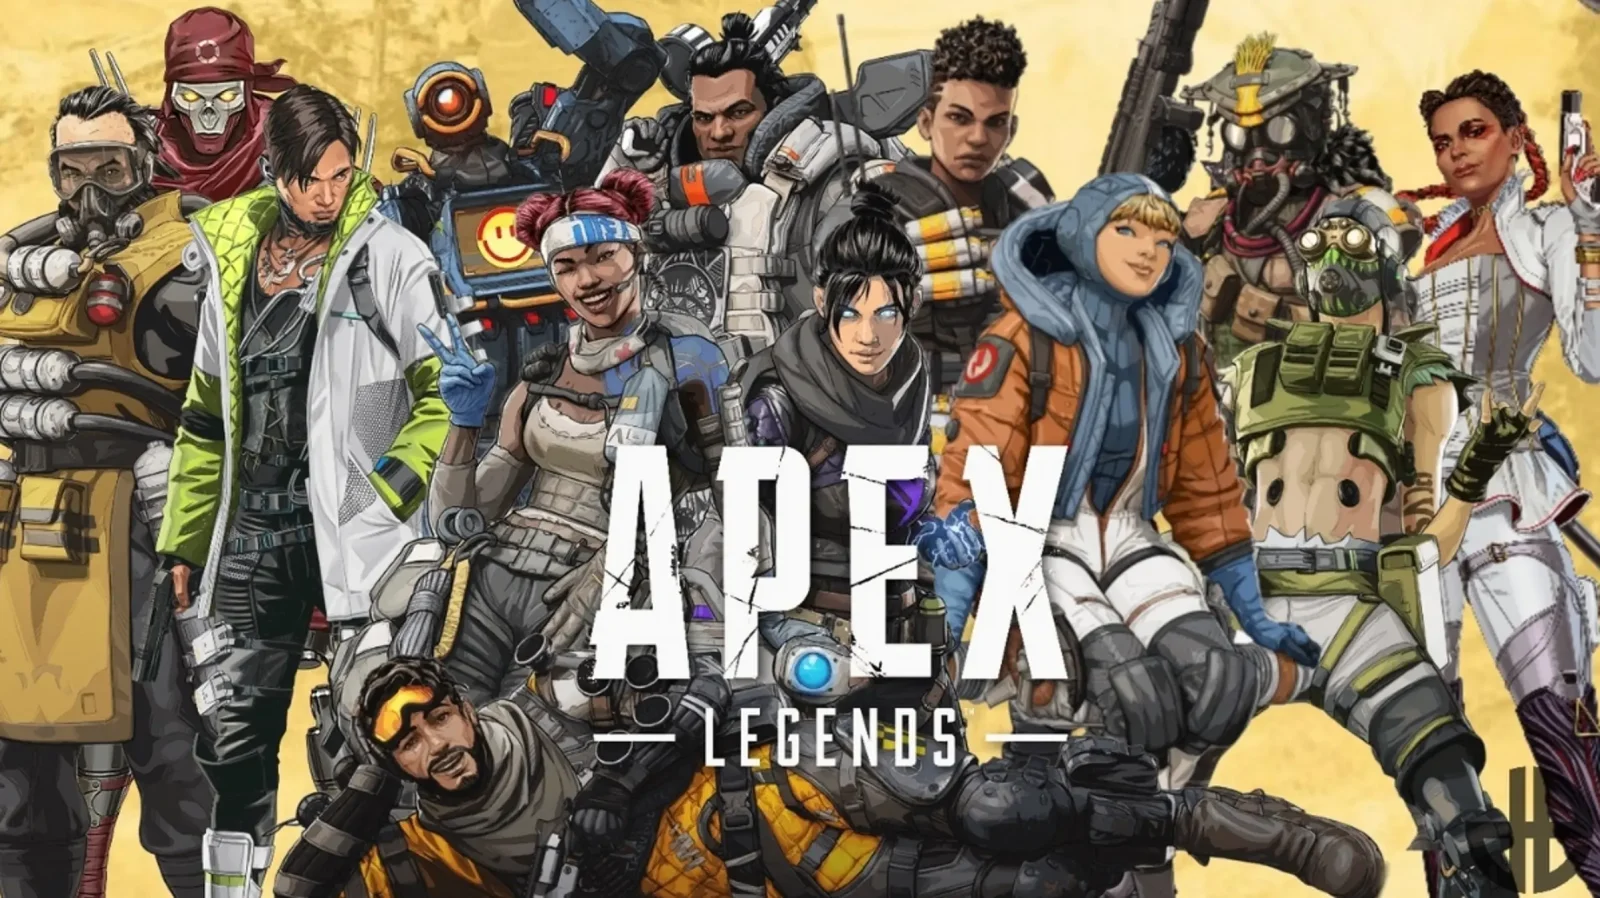 招聘广告显示Respawn正在开发一款Apex世界观的FPS游戏